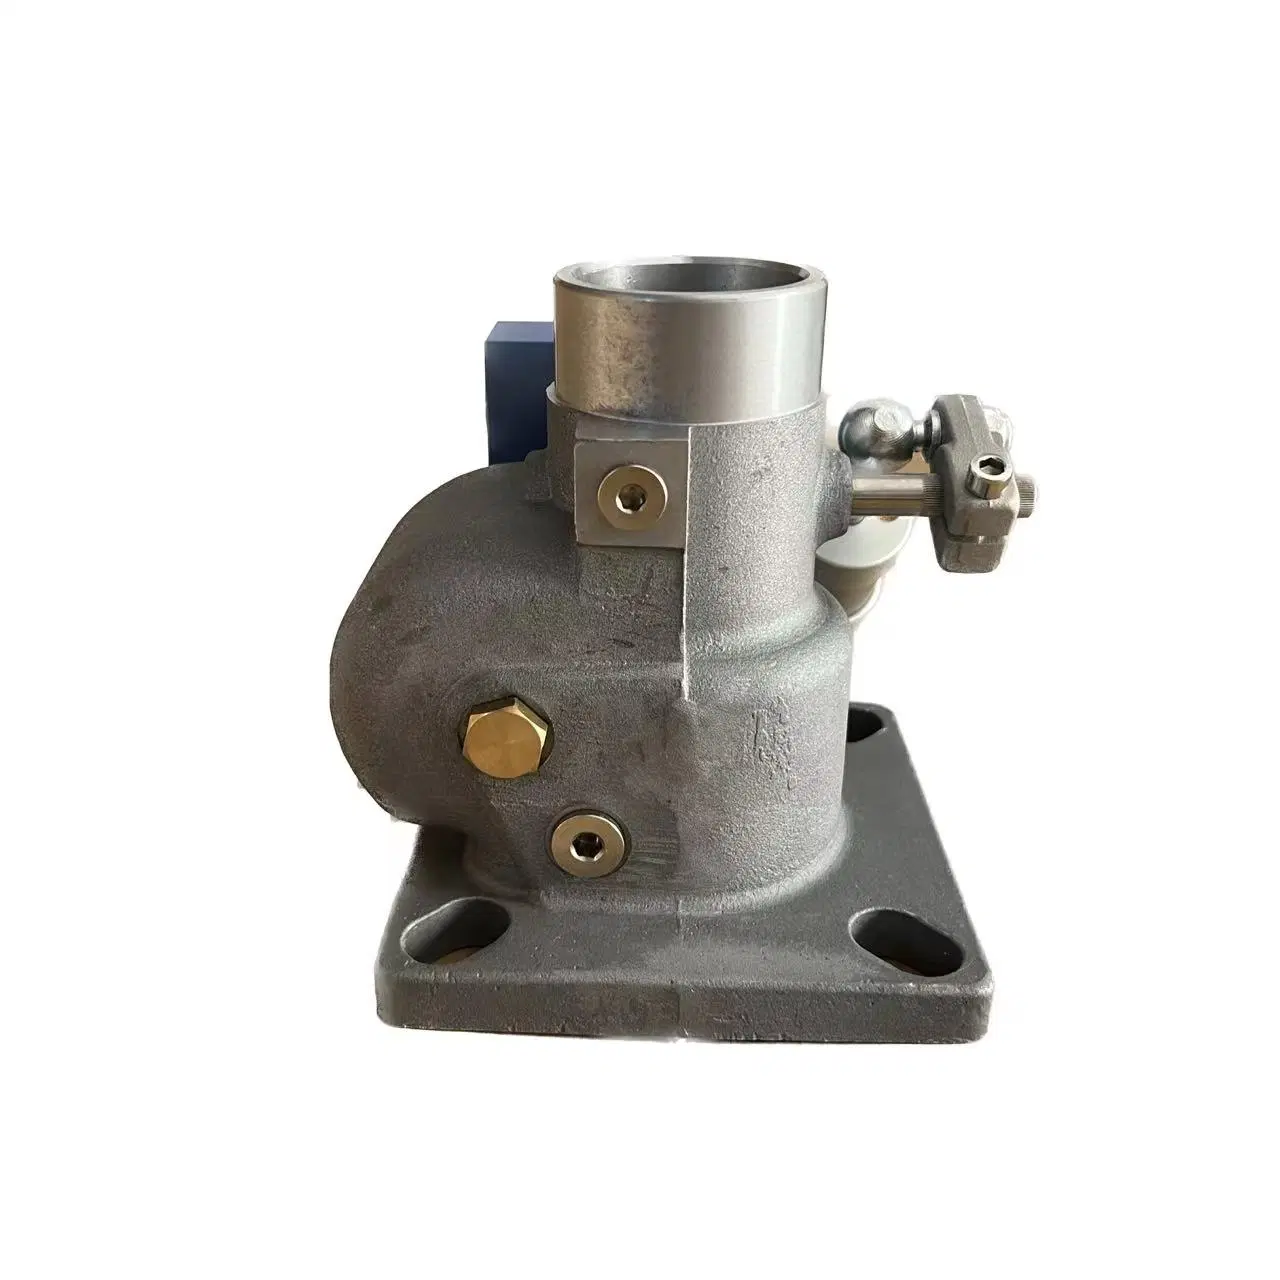 Разгрузчик клапана двигателя впуска и выпуска деталей промышленного воздушного компрессора Клапан